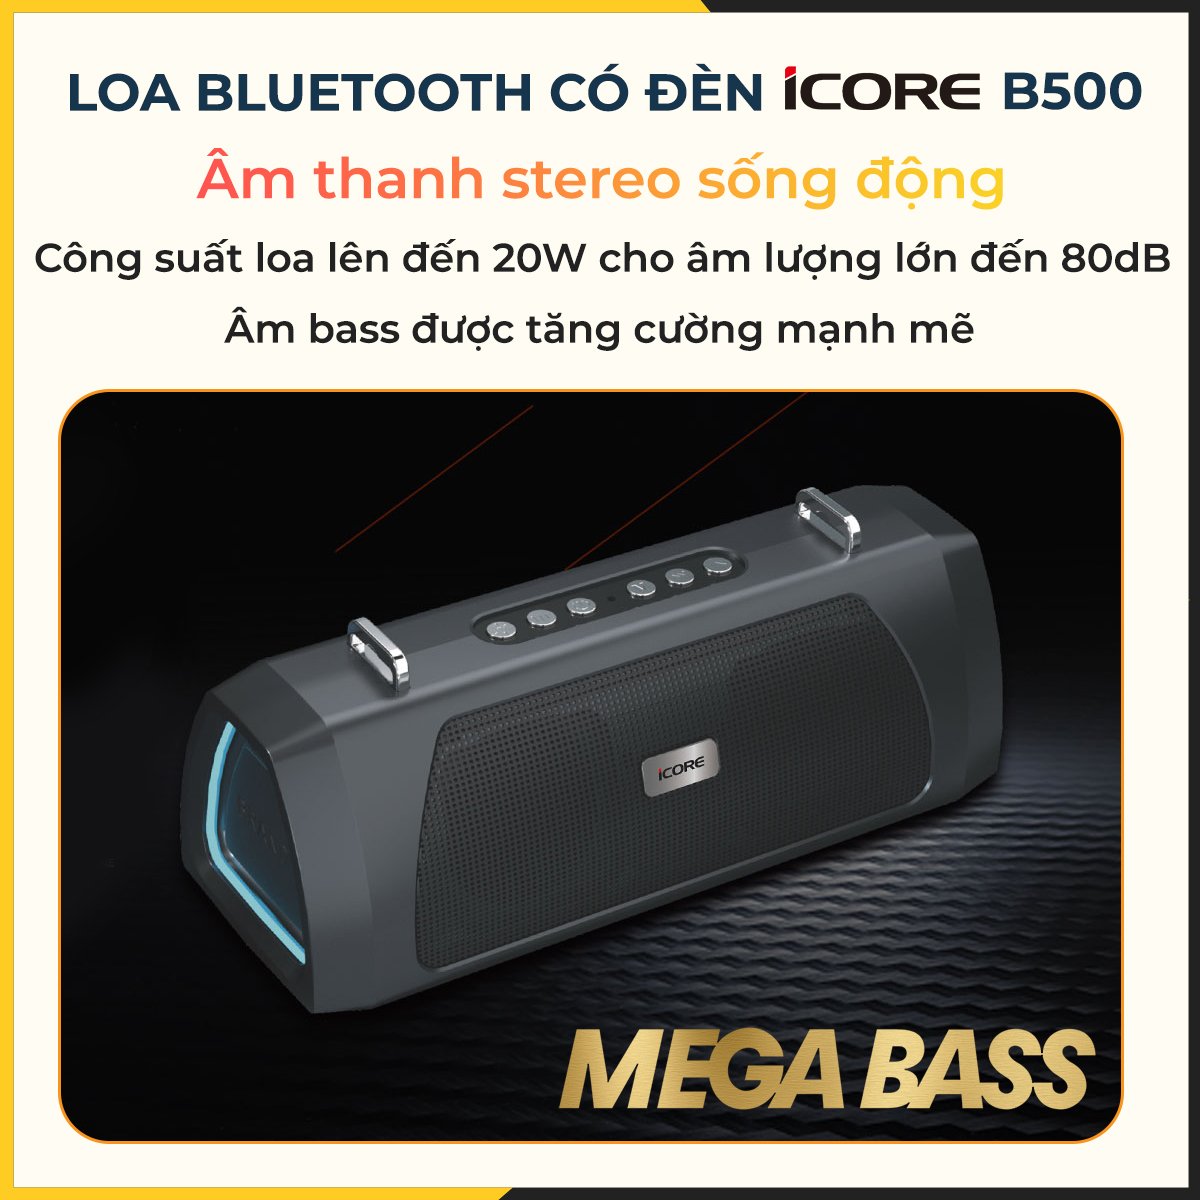 Loa Bluetooth có đèn iCore B500